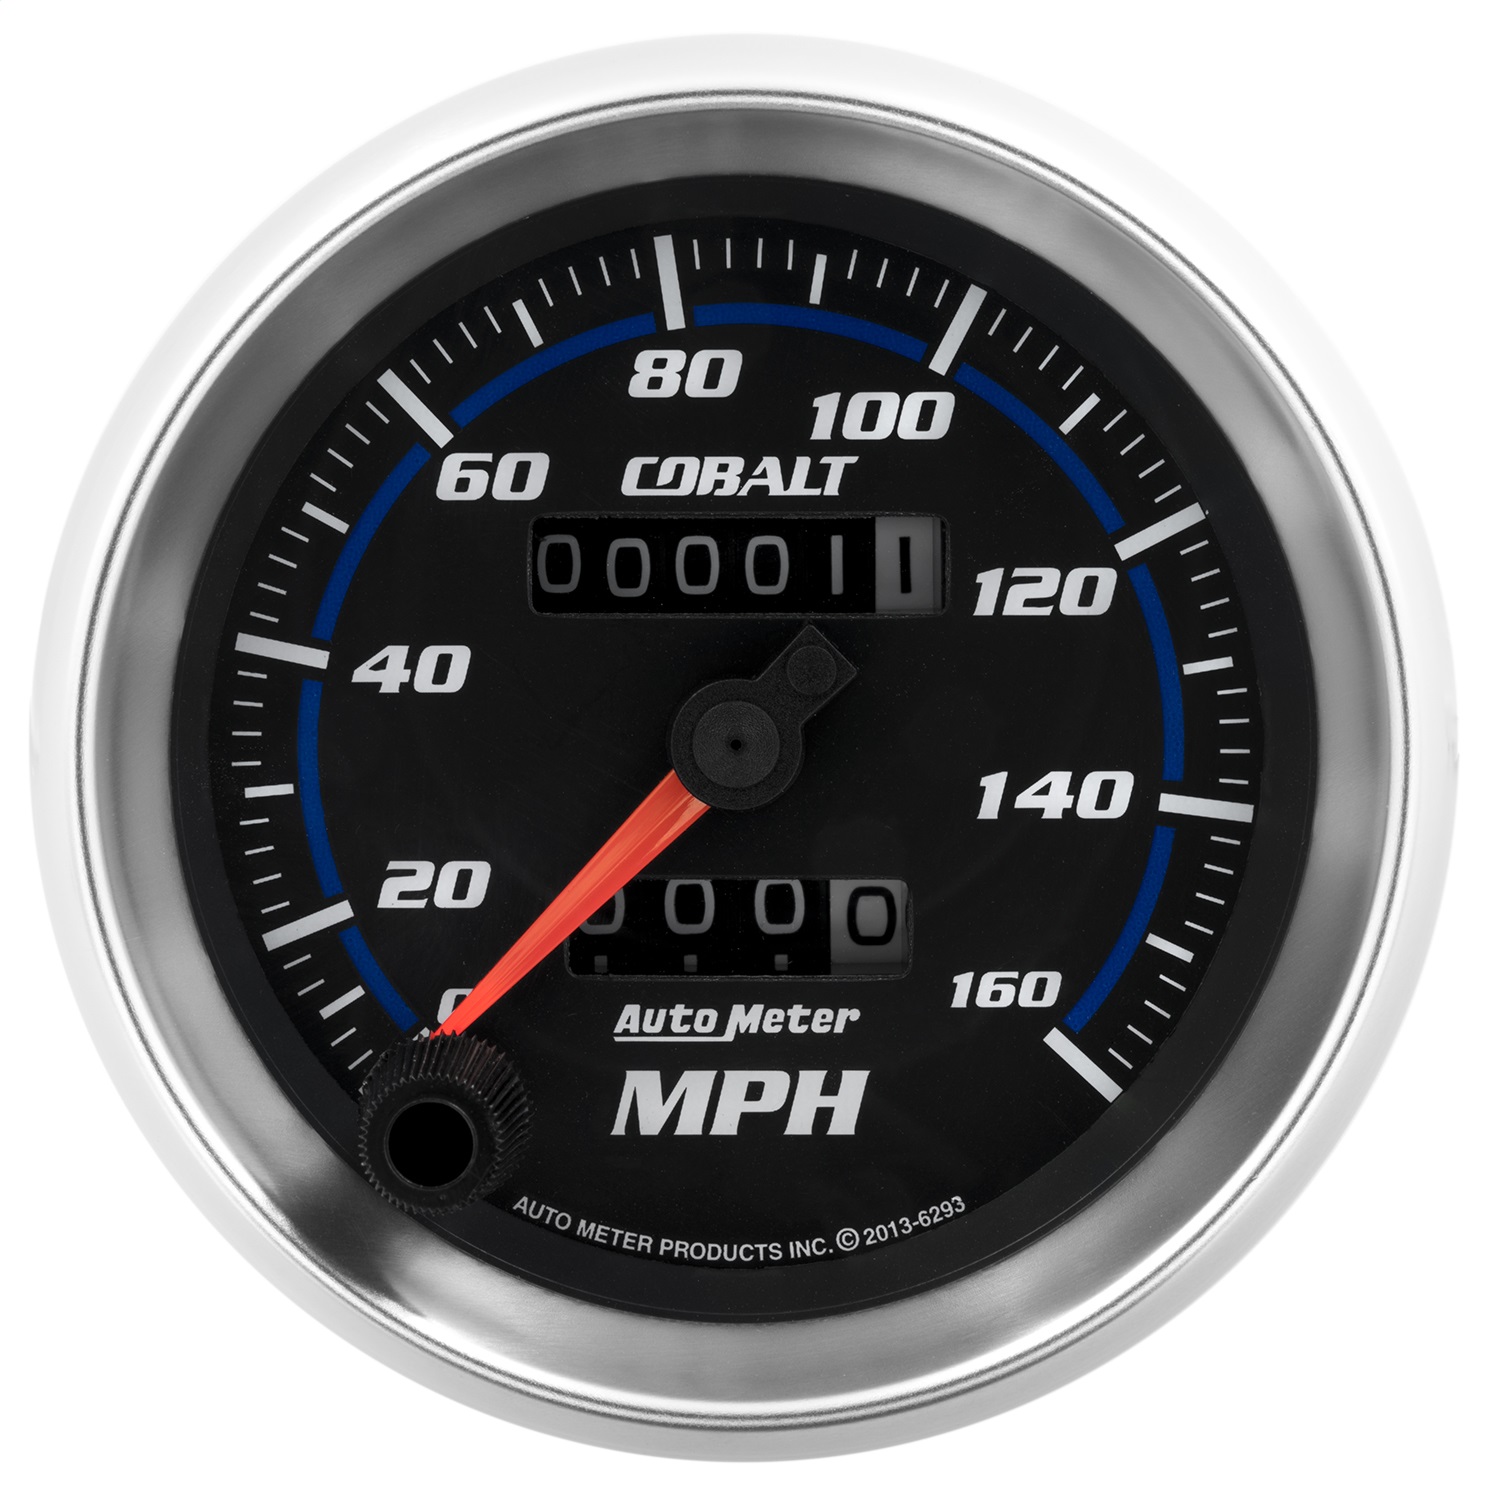 Auto Meter Auto Meter 6293 Cobalt; Mechanical Speedometer